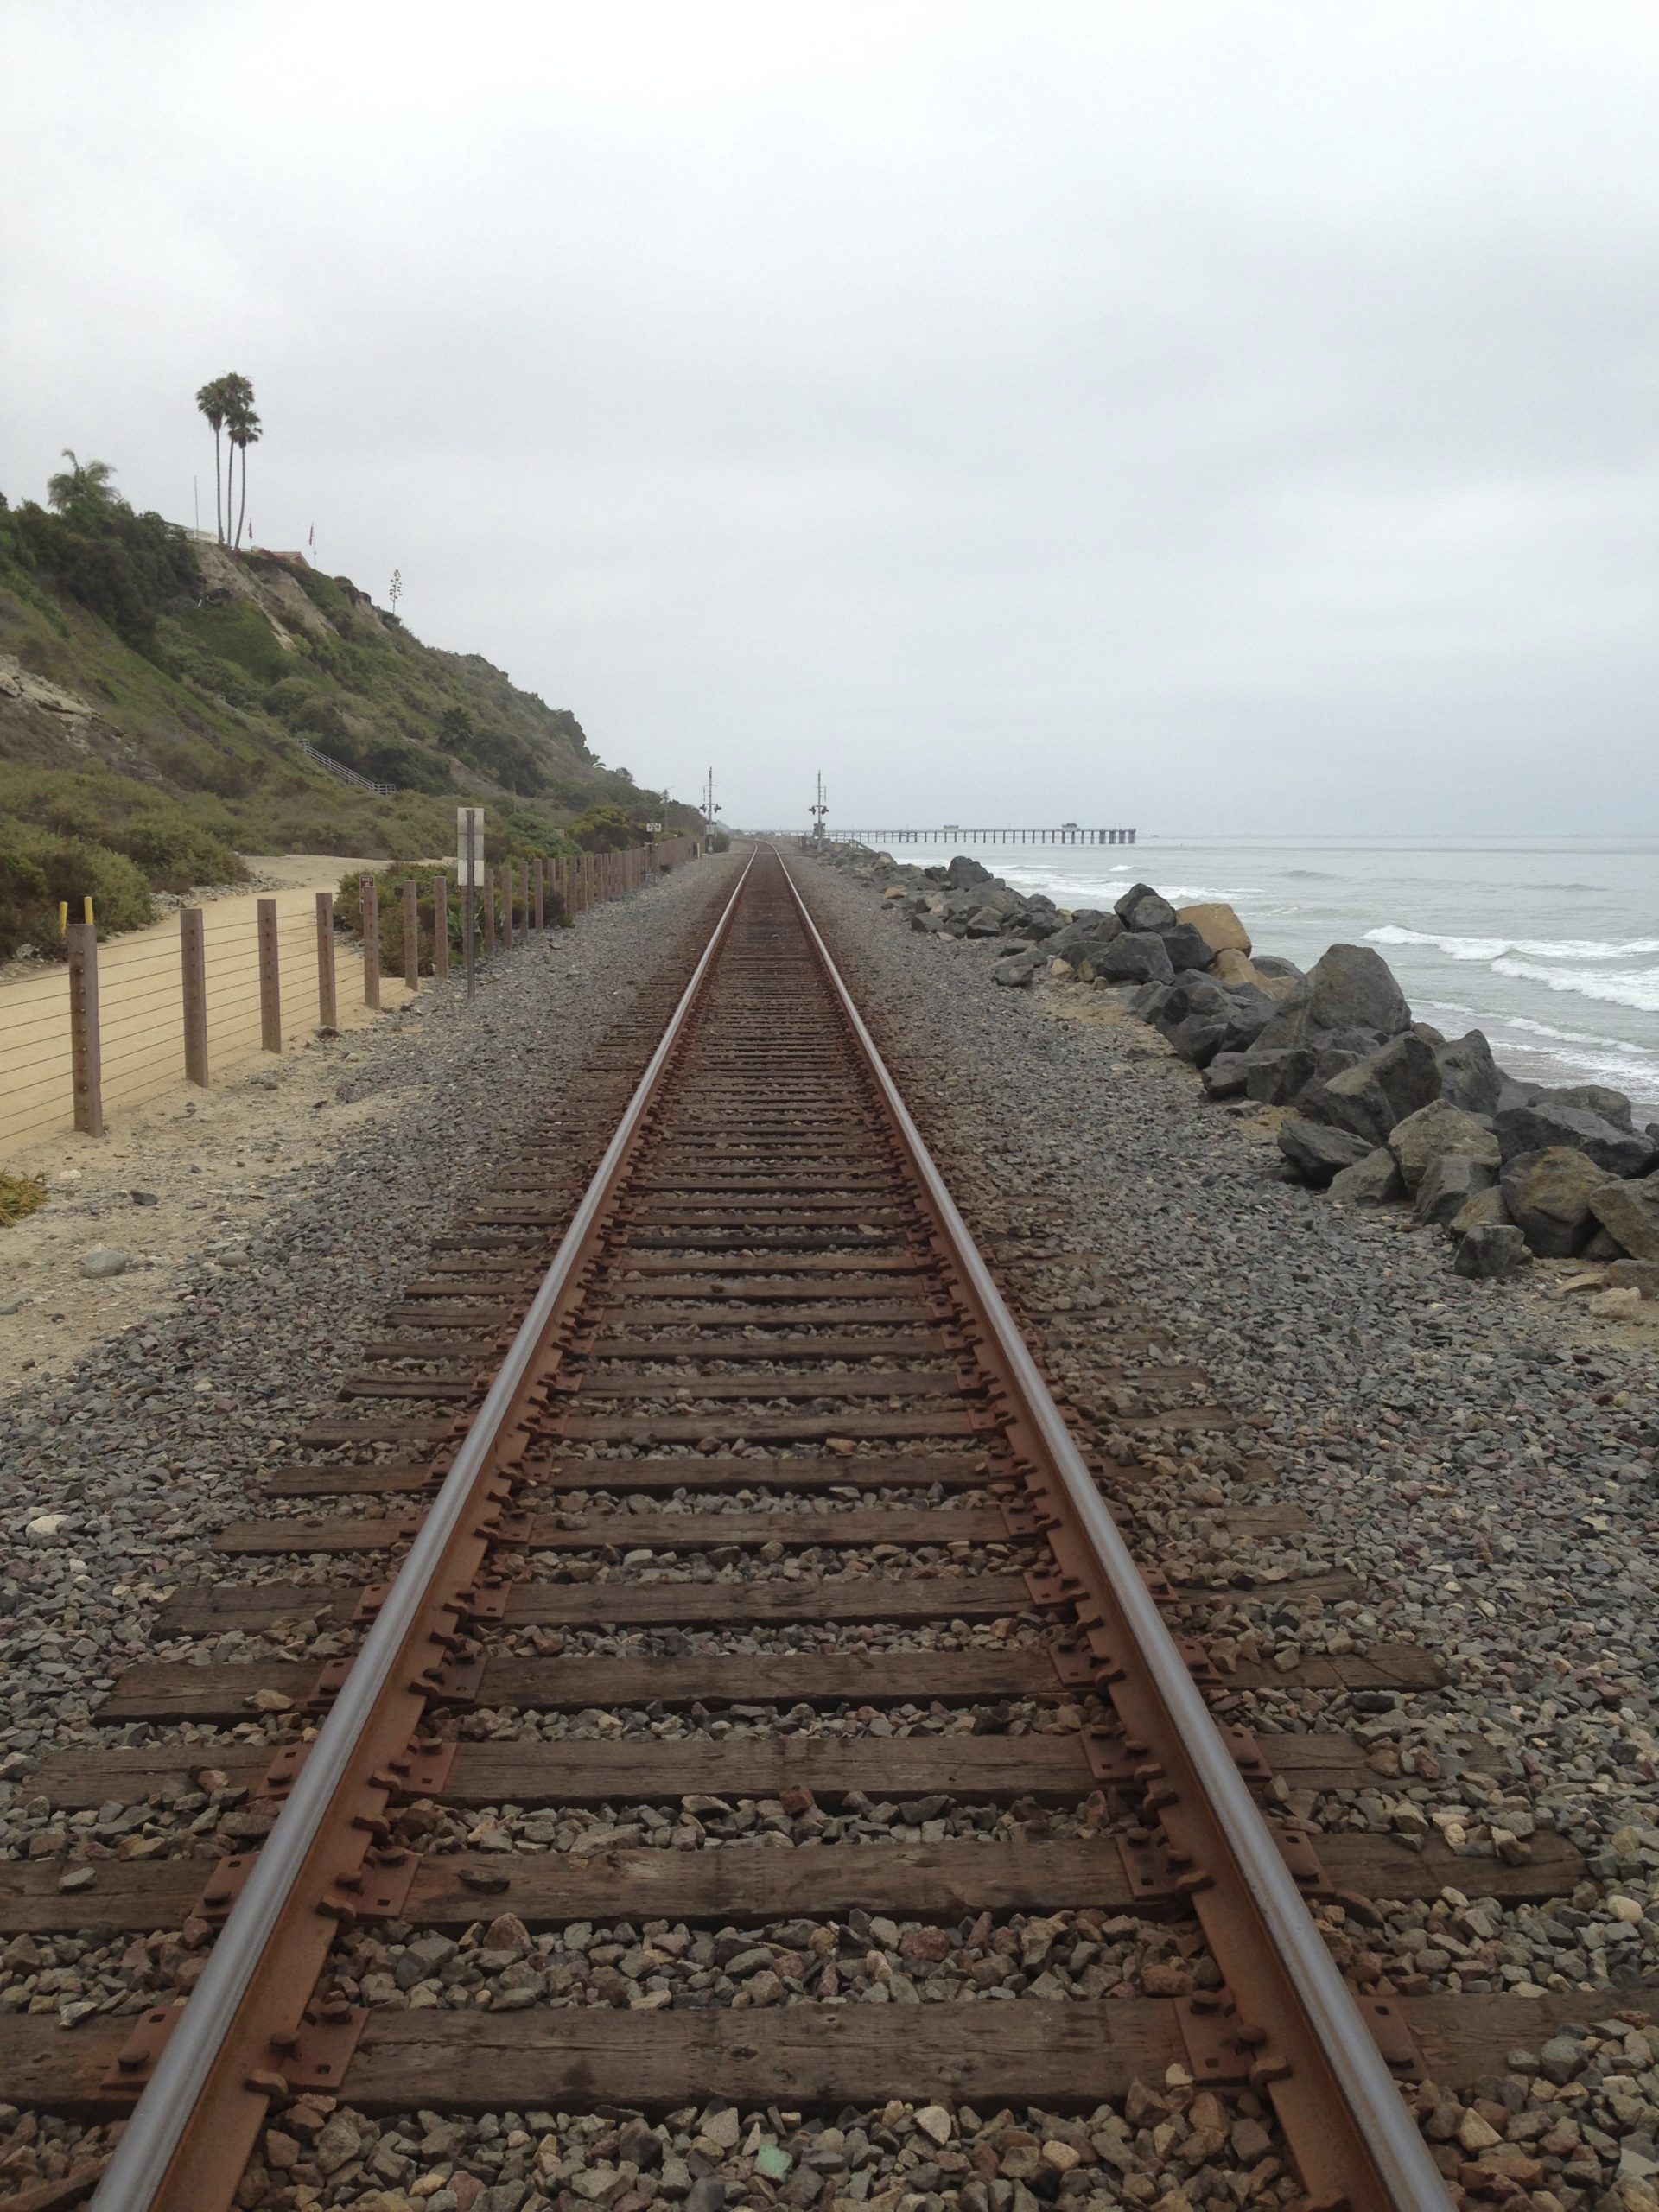 RR tracks near San Clemente California